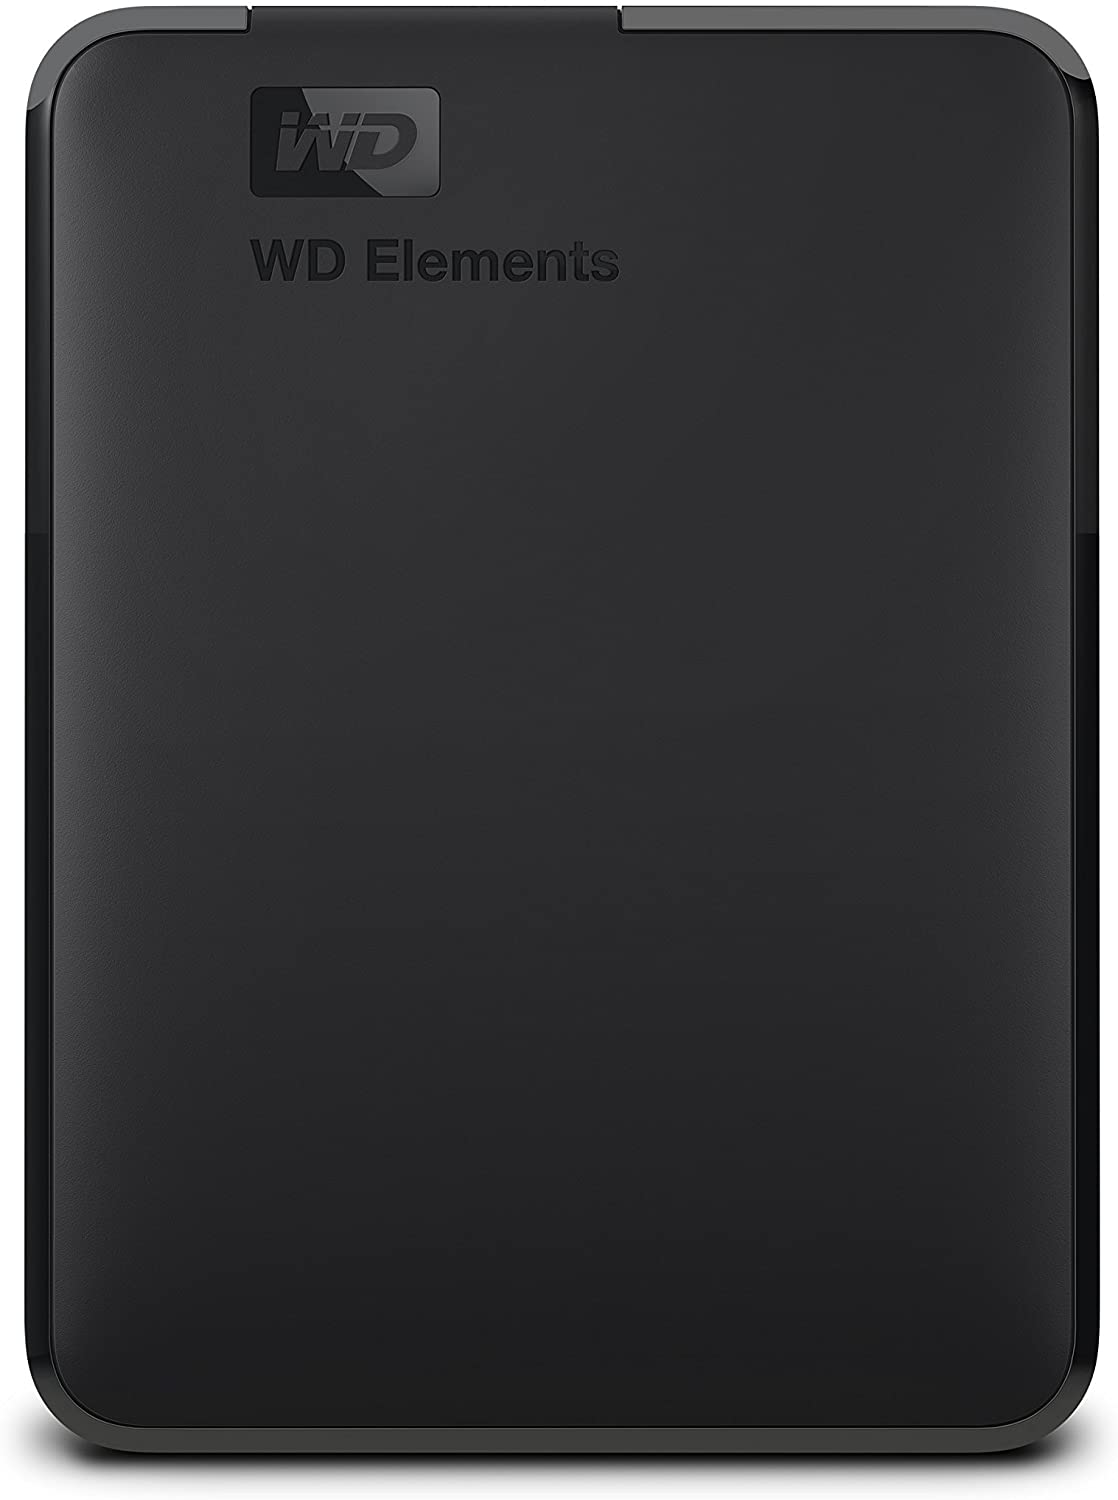 WDBU6Y0020BBK-WESN | Western Digital Elements 2TB USB 3.0 Portable External Hard Drive